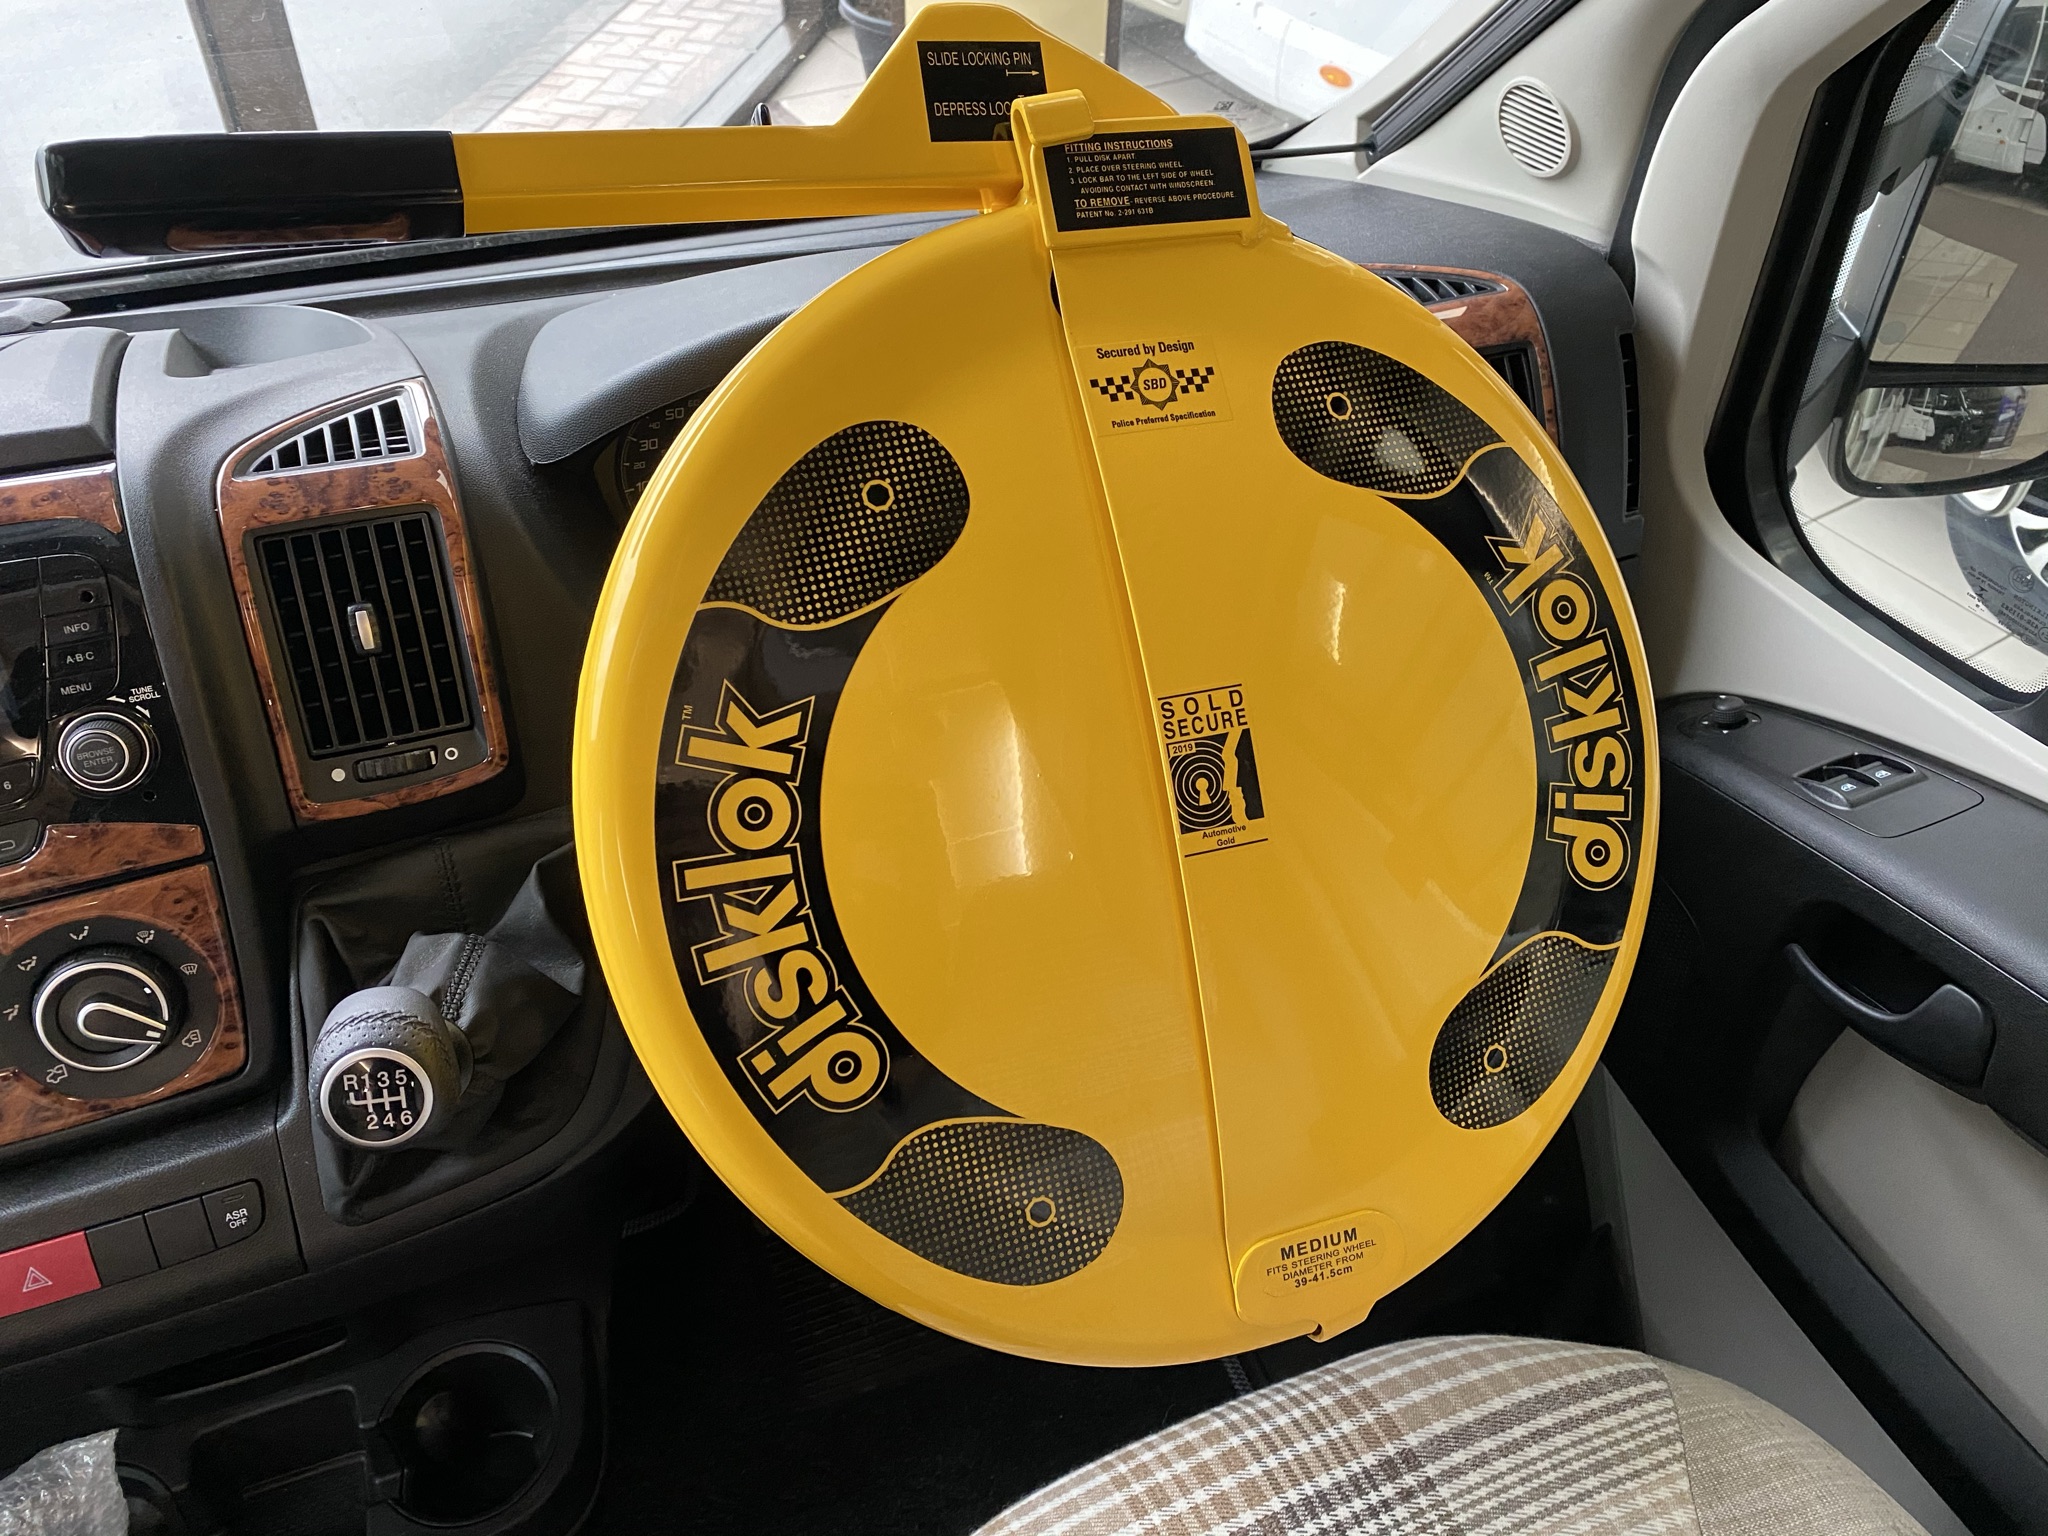 disklock steering wheel lock in motorhome